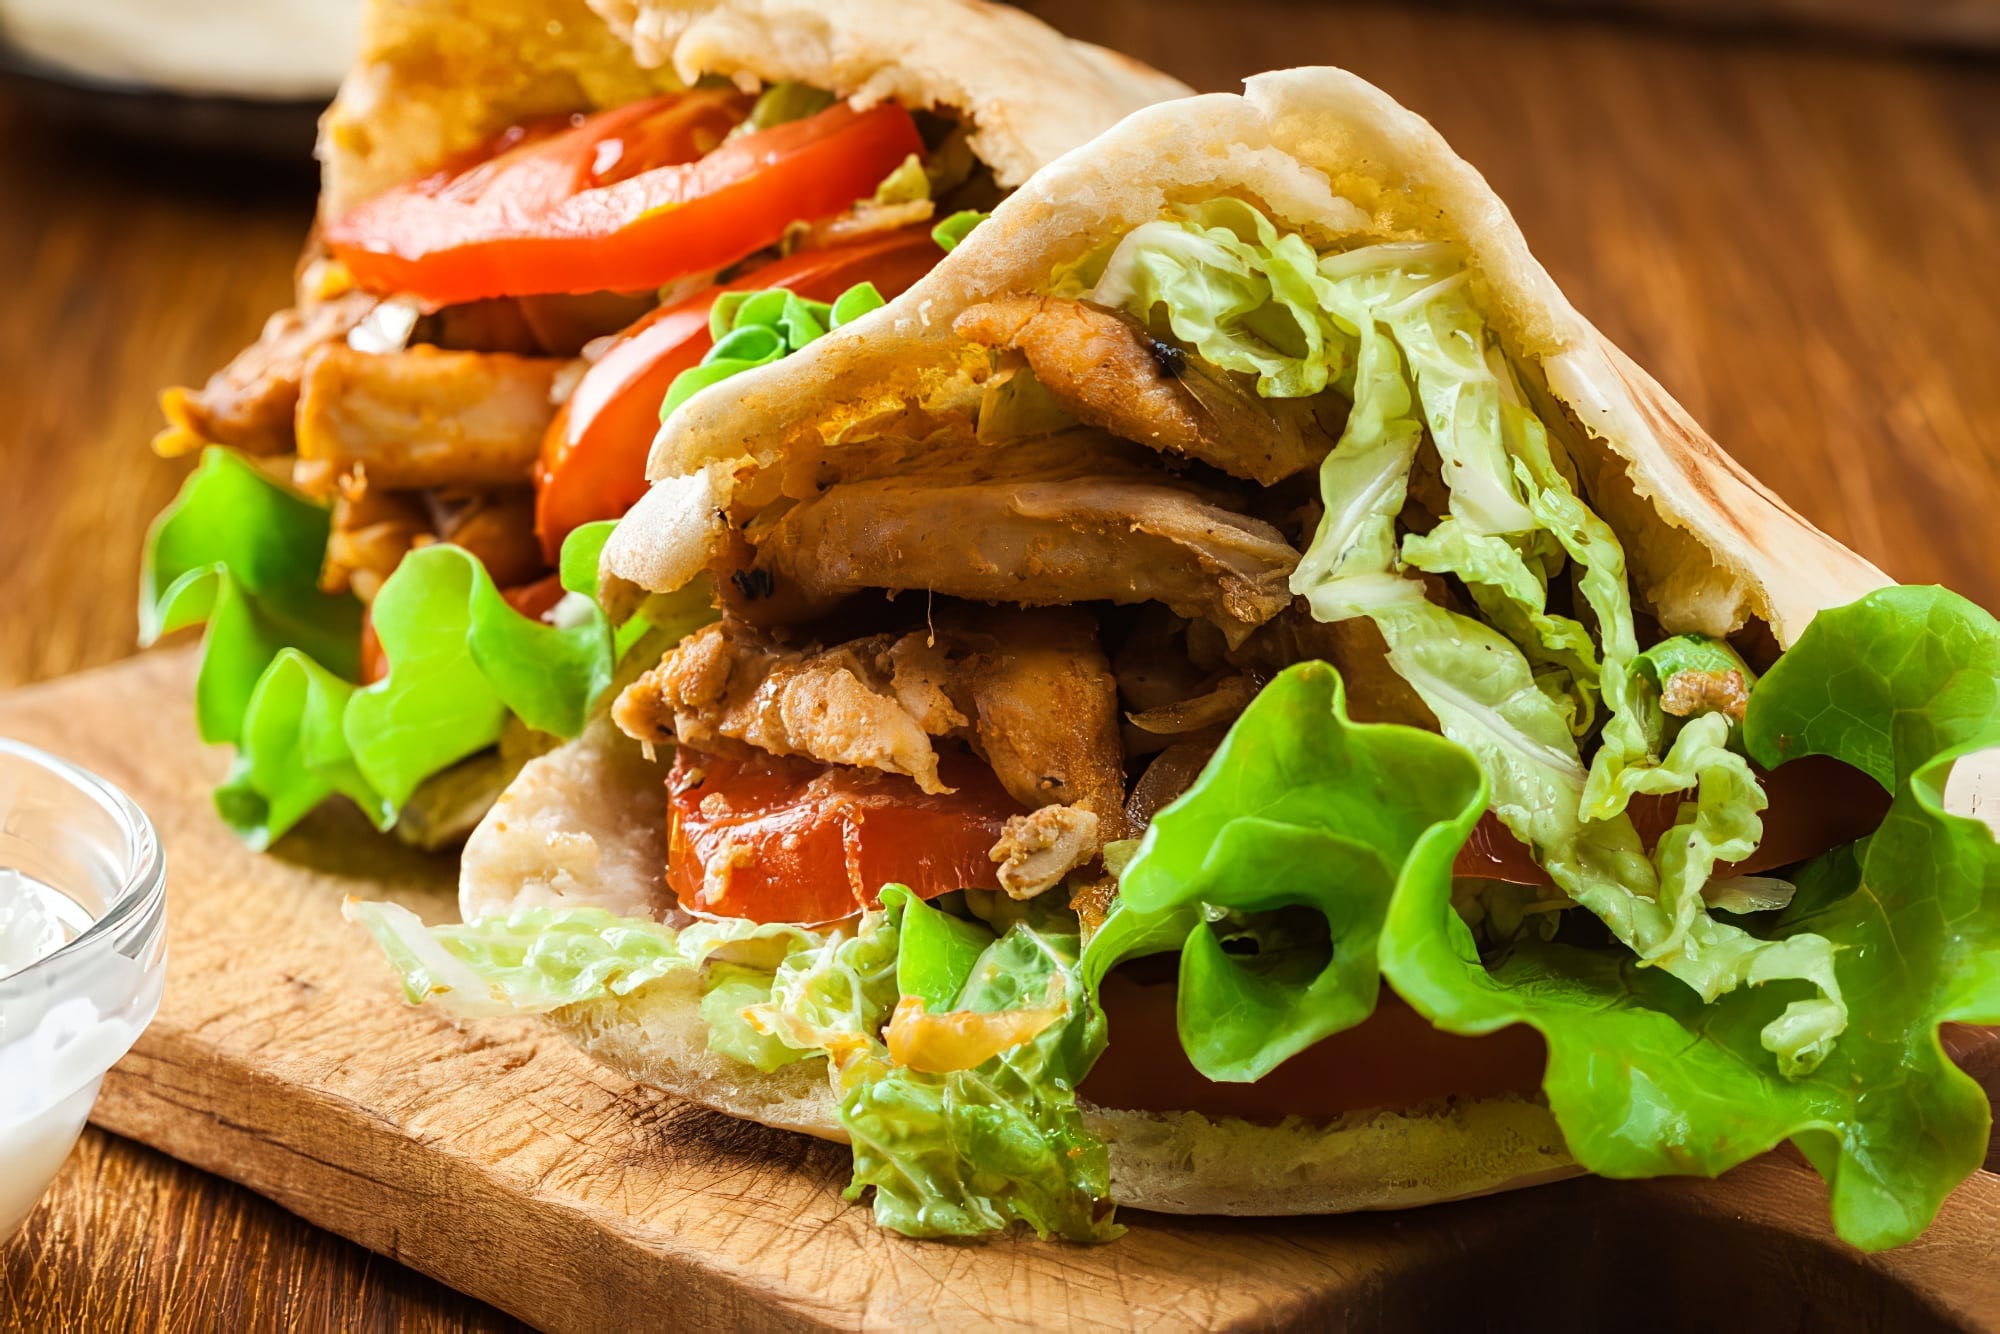 Le Kebab, bien plus qu’un simple sandwich oriental